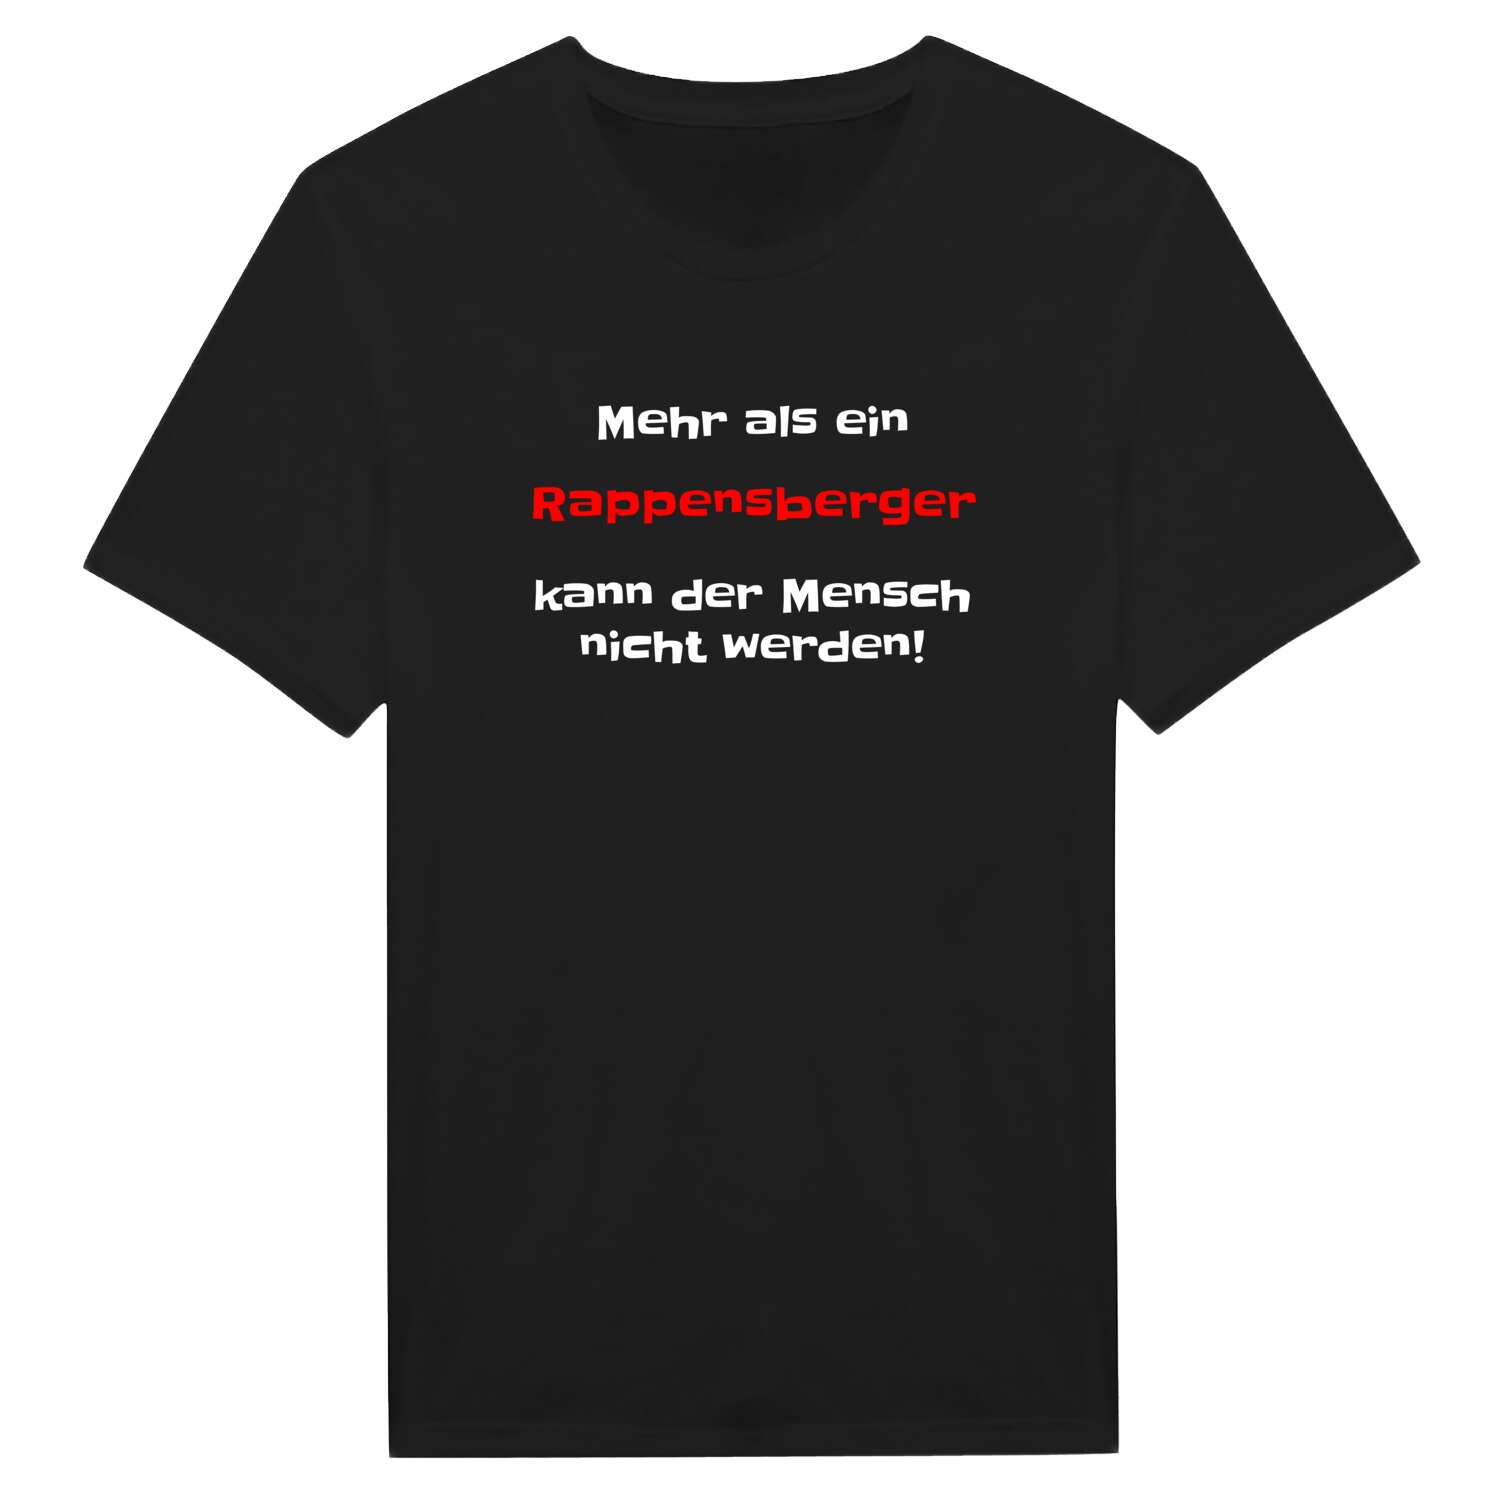 Rappensberg T-Shirt »Mehr als ein«